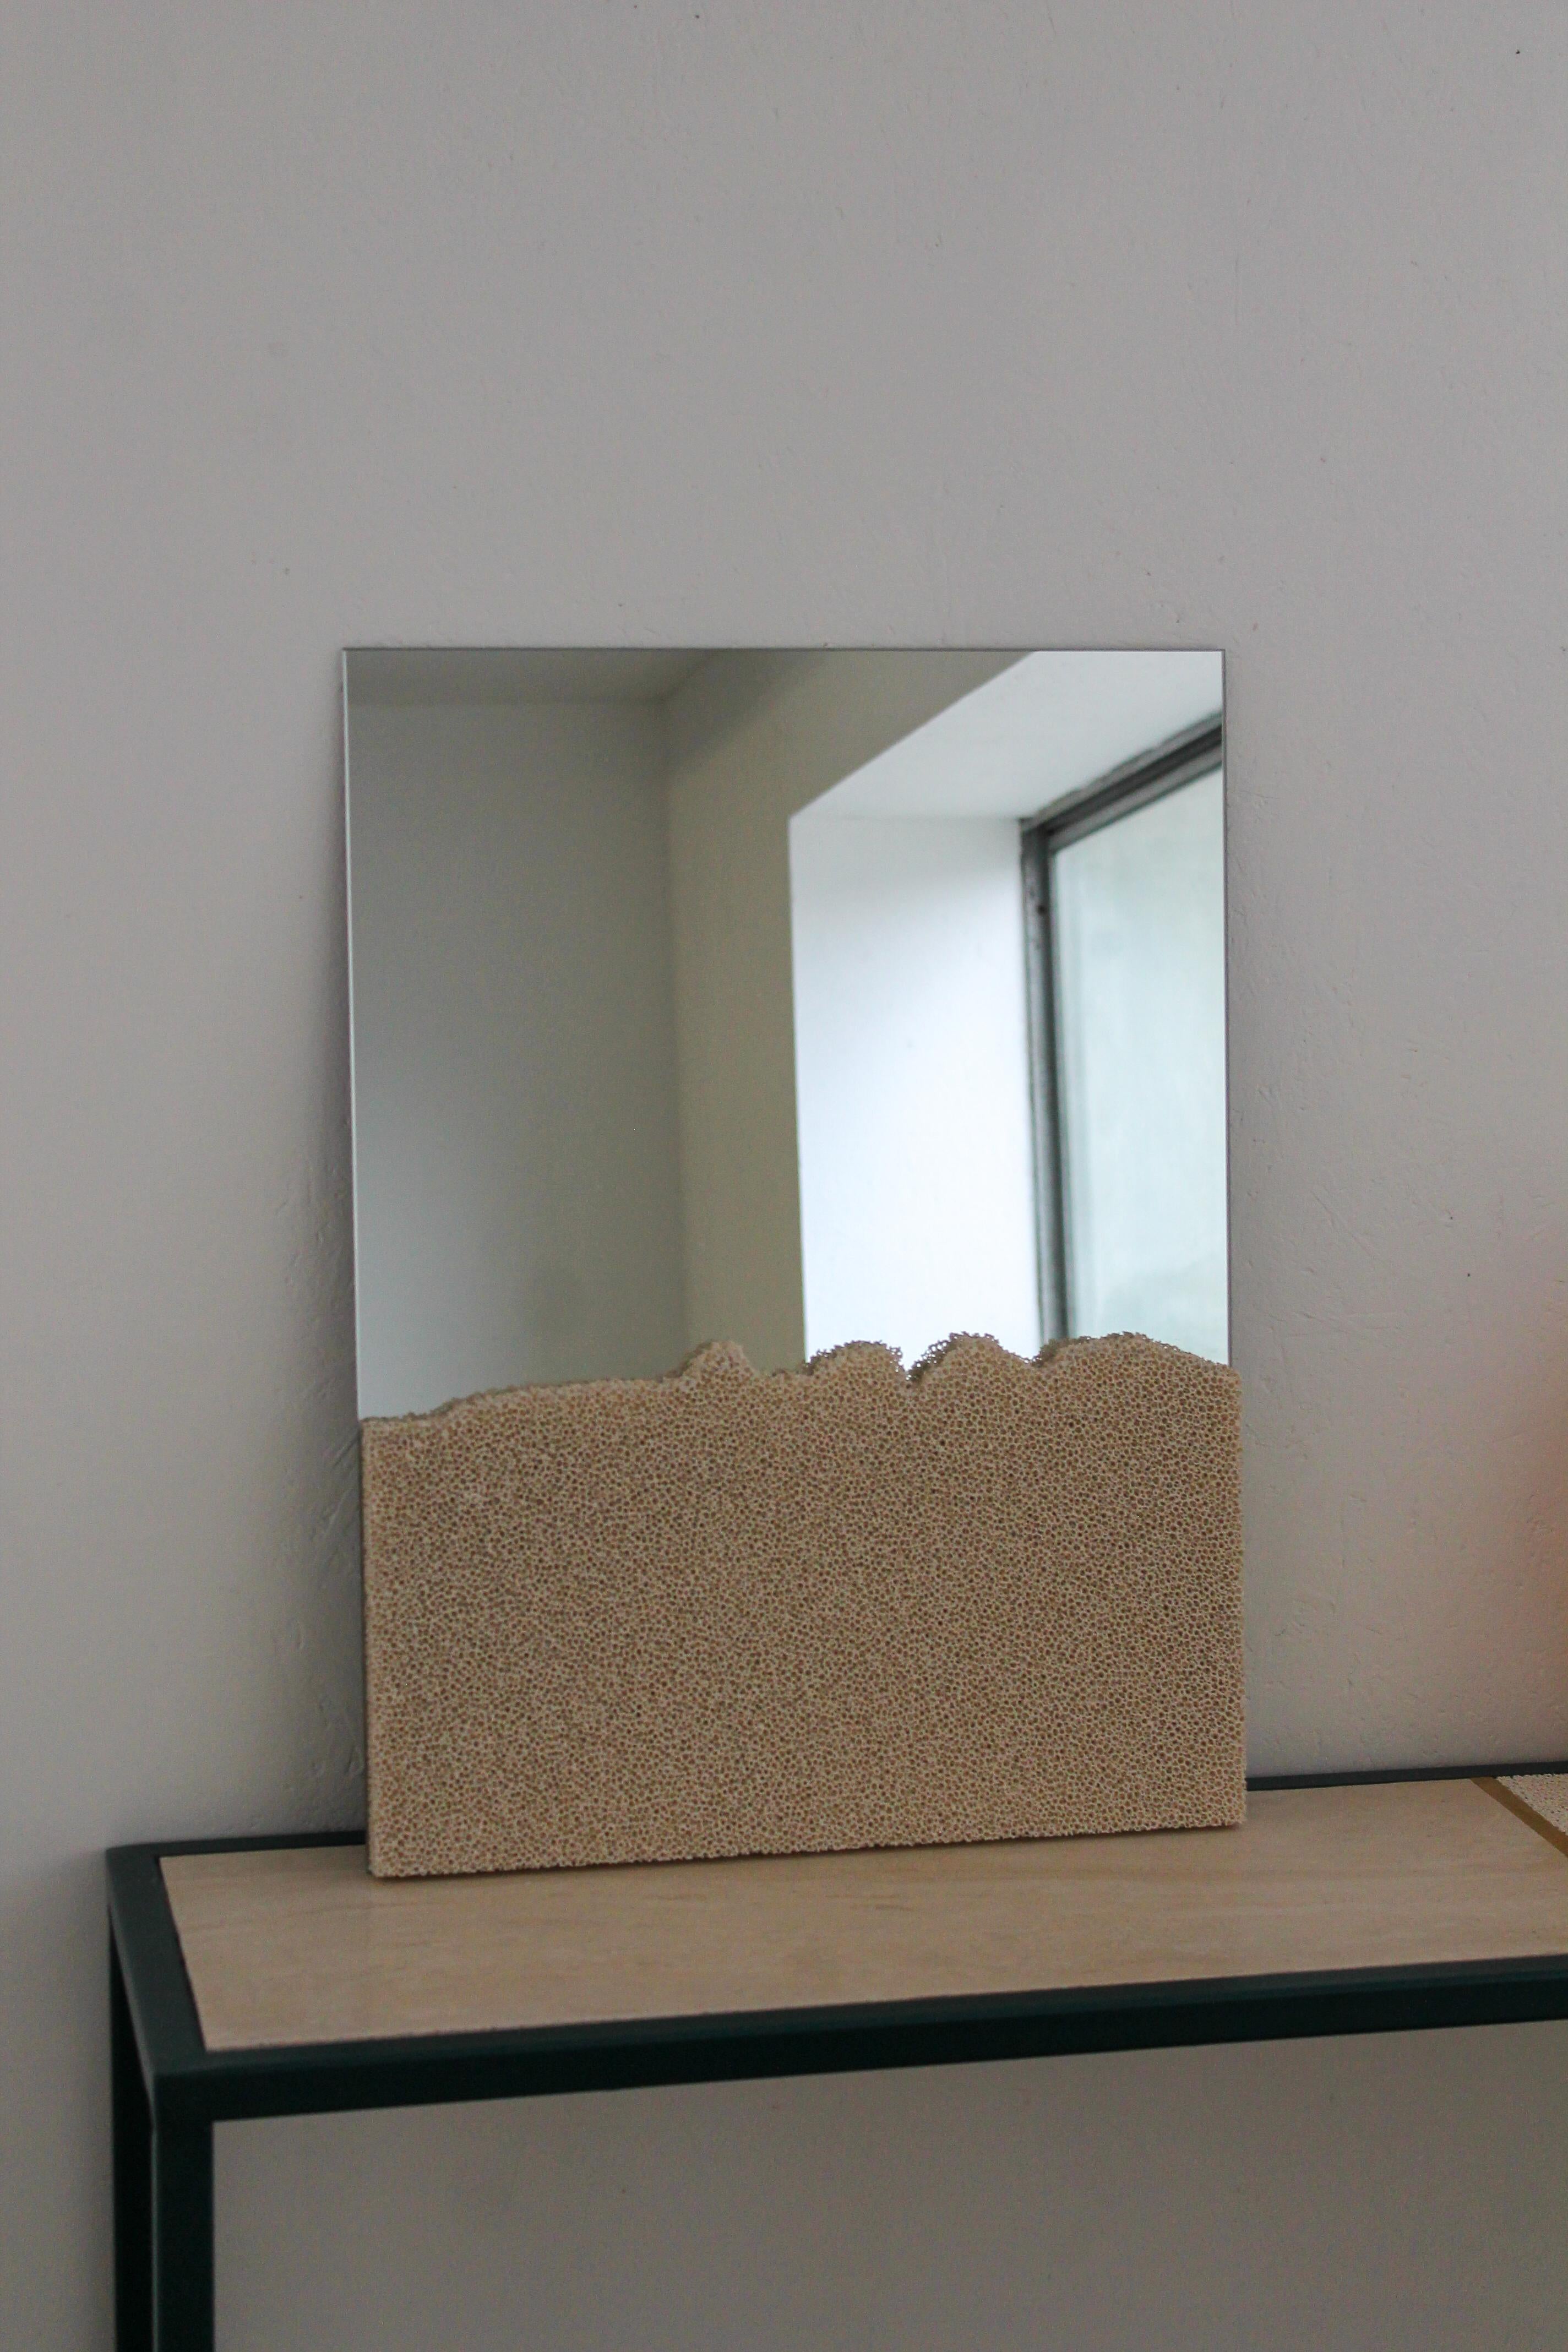 Le SR Mirror est un humble miroir que le designer Jordan Keaney a spécialement conçu pour être suspendu ou posé, avec sa signature Ceramic Foam sur la face avant, transformant ces miroirs en sculptures fonctionnelles. La structure en céramique